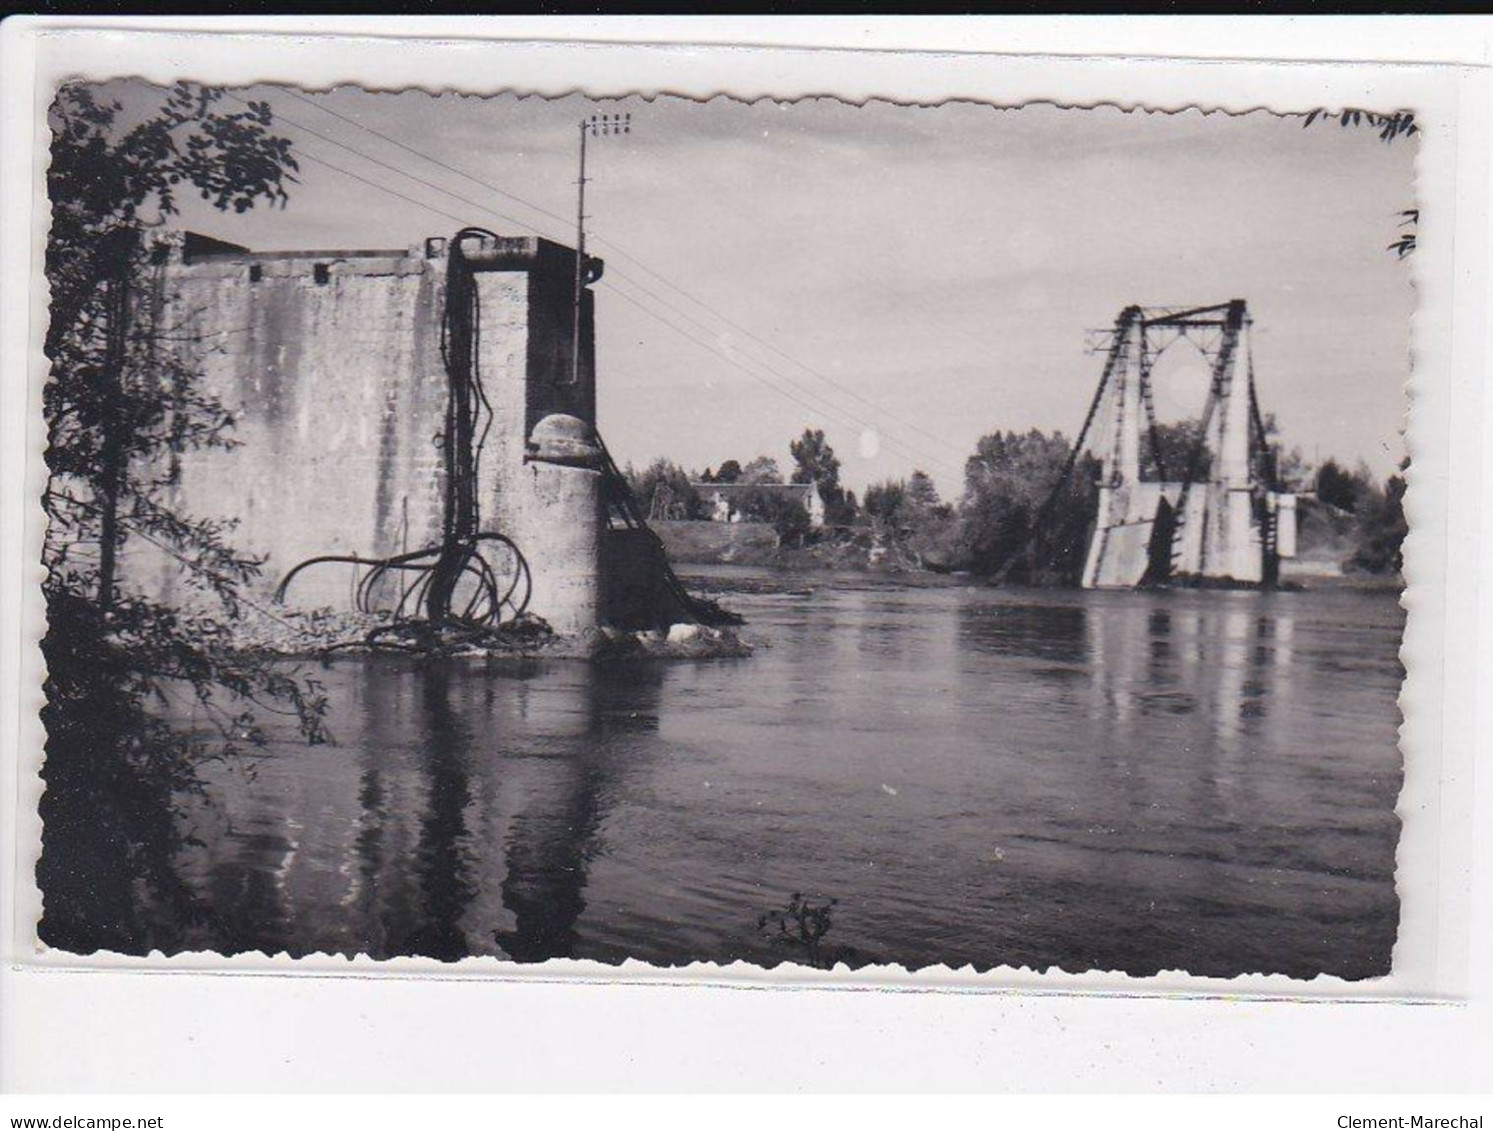 SAUMUR : Ruines de la seconde Guerres Mondiale, Lot de 8 Cartes Postales - très bon état